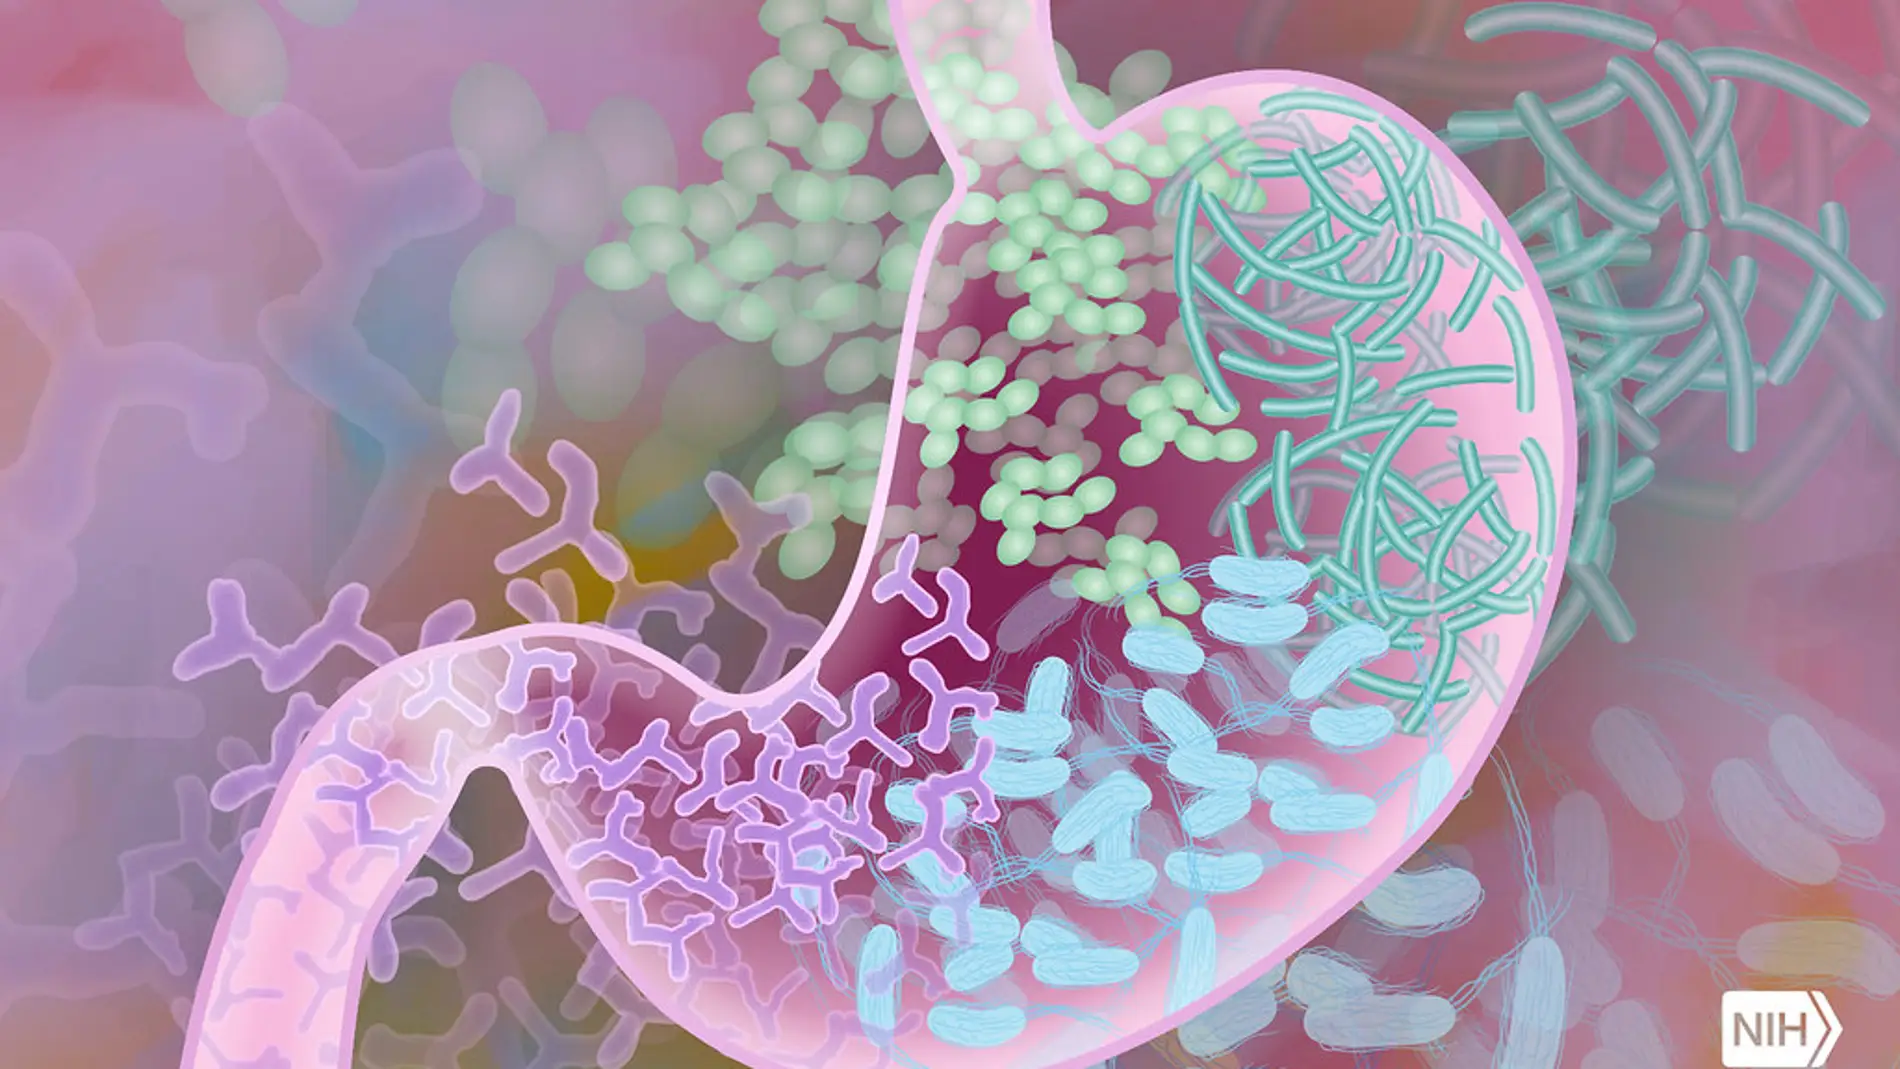 Un test de las bacterias de nuestro estómago para detectar enfermedades